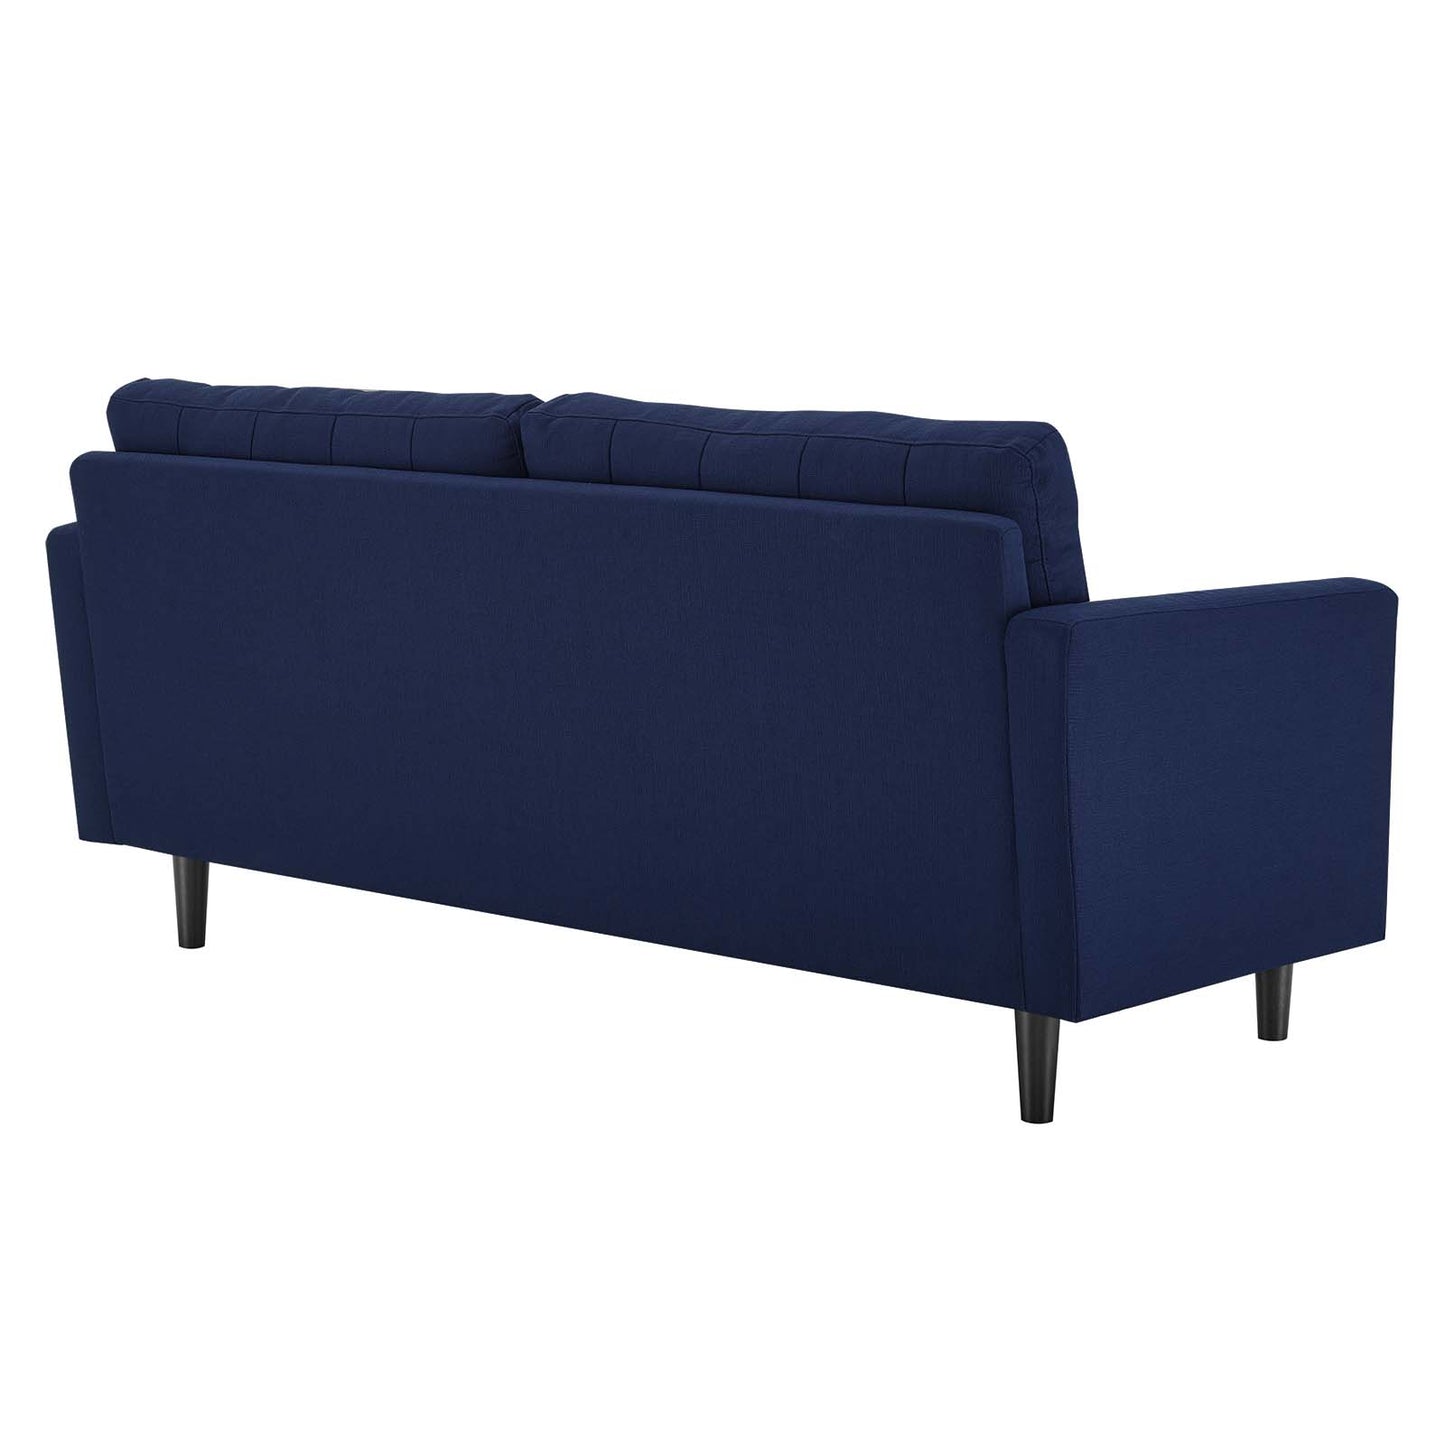 Exalt Tufted Fabric Sofa Royal Blue EEI-4445-ROY